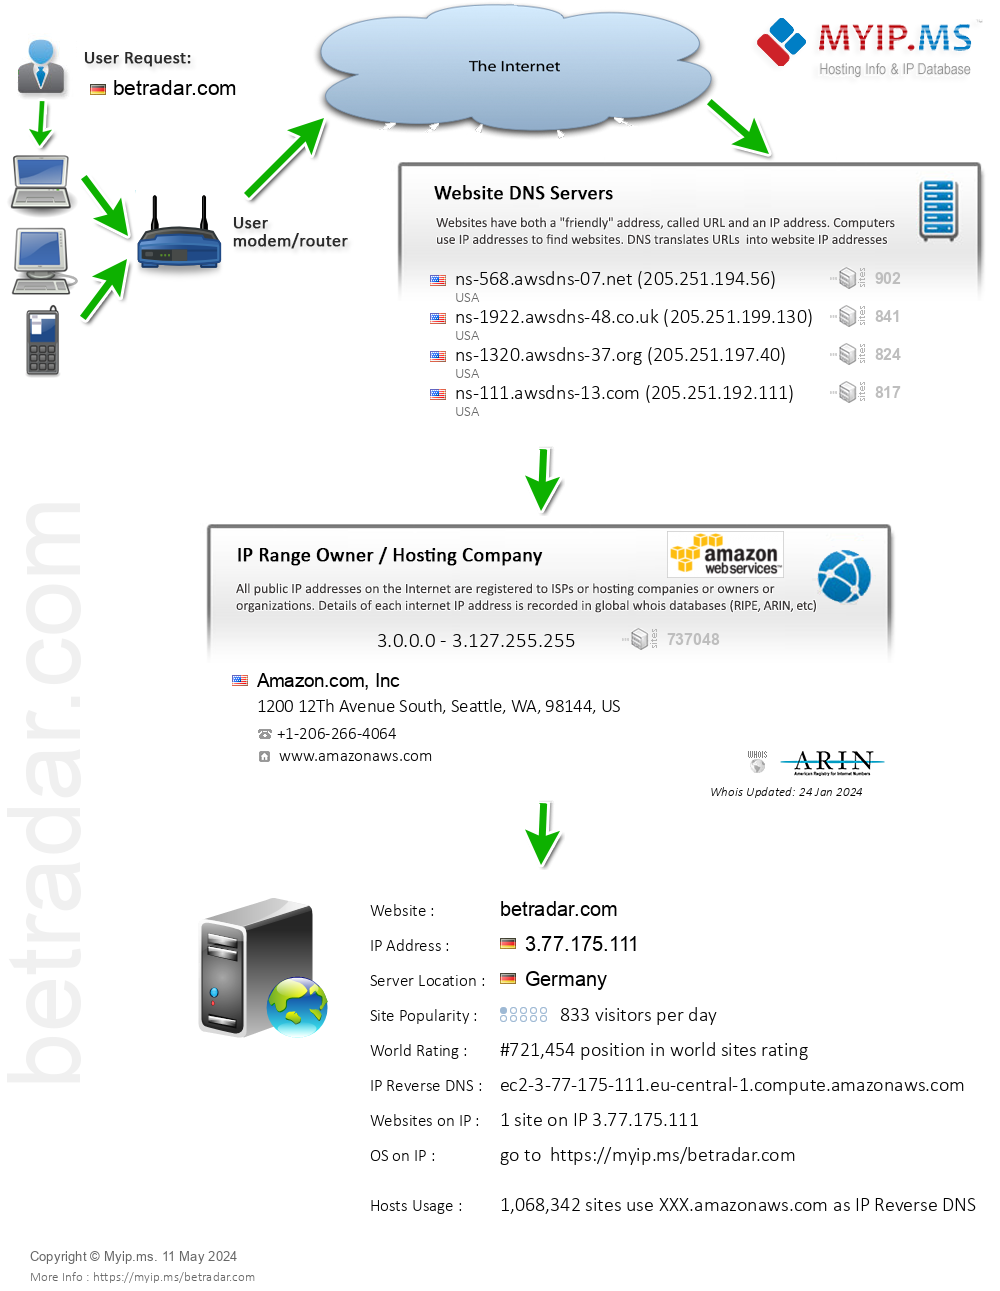 Betradar.com - Website Hosting Visual IP Diagram